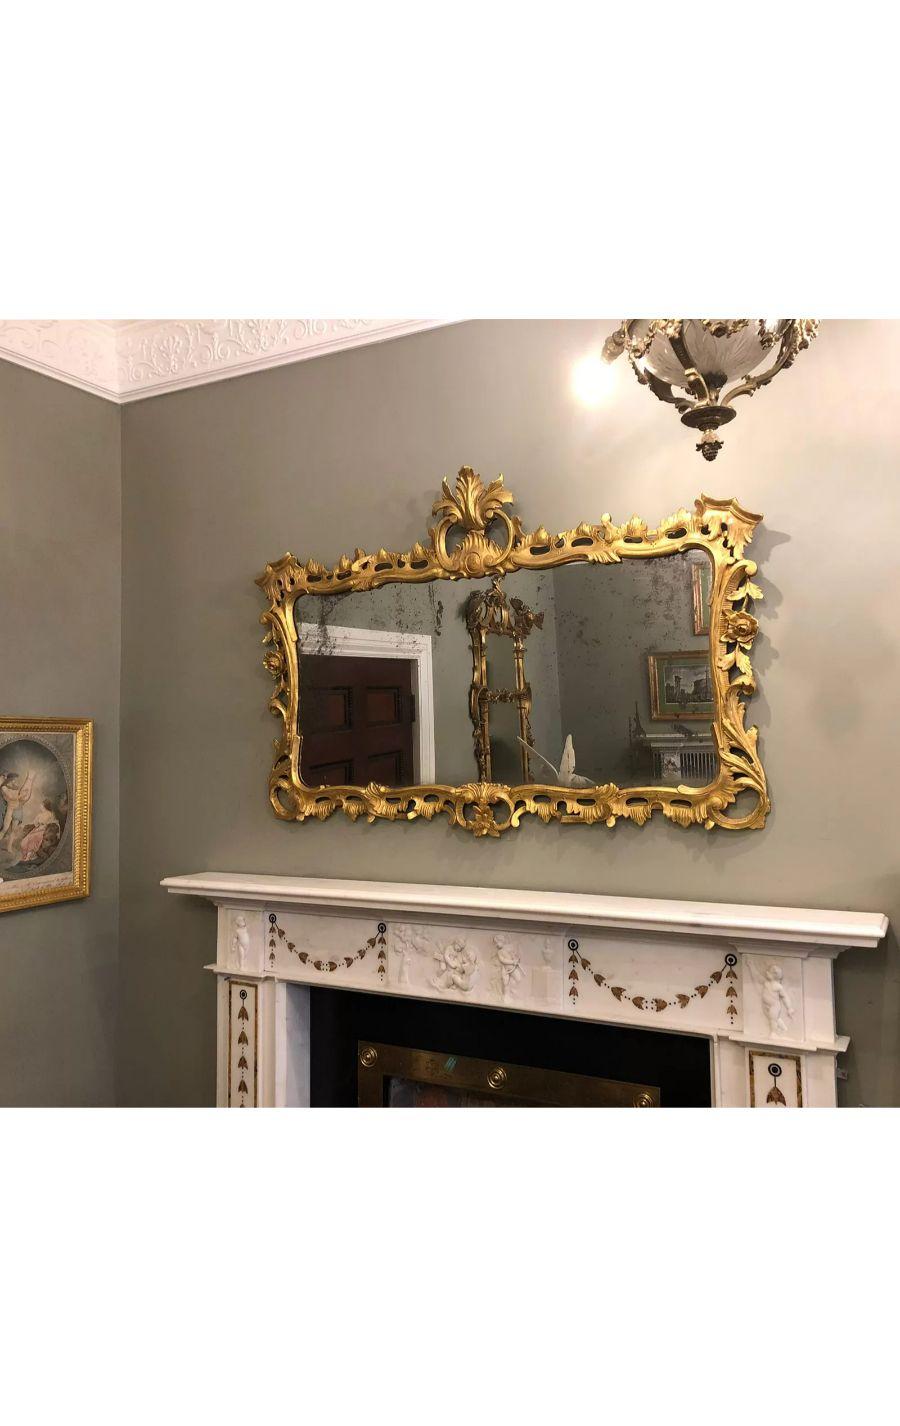 Miroir ancien en bois sculpté et doré de style rococo.

Le cadre en bois doré, exubérément sculpté à la manière rococo, avec des acanthes, des feuillages et des rinceaux.

Une forme idéale pour le dessus d'une cheminée ou d'une table